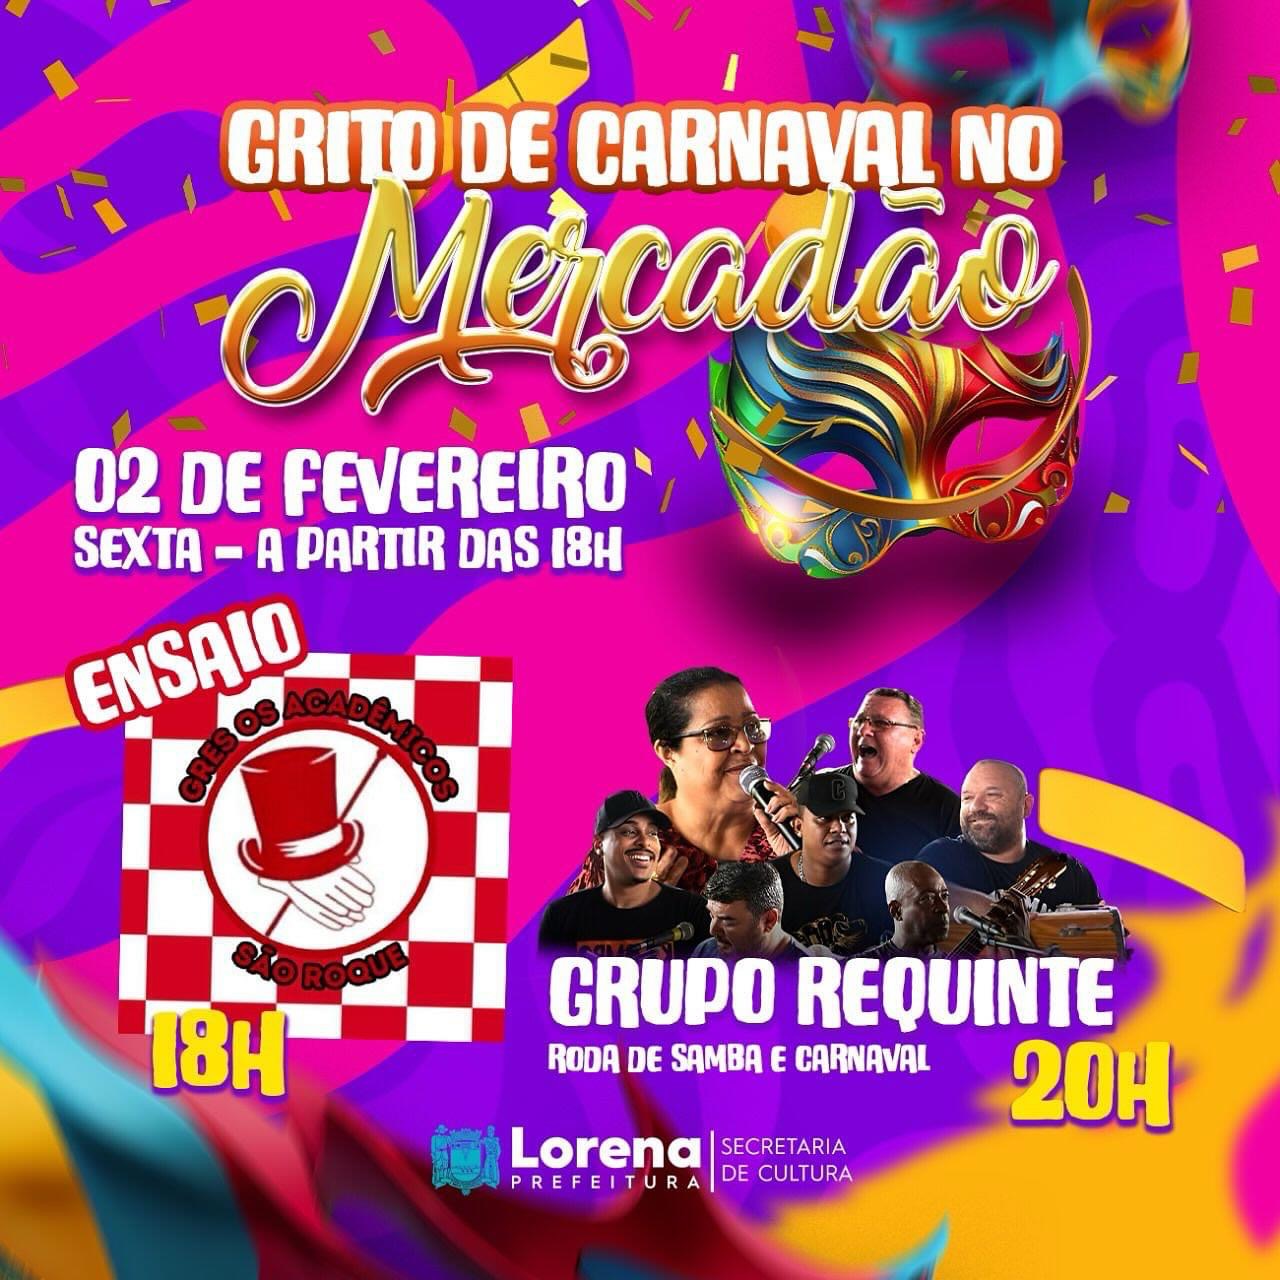 O Grito de Carnaval acontece nesta sexta (02) no Mercadão